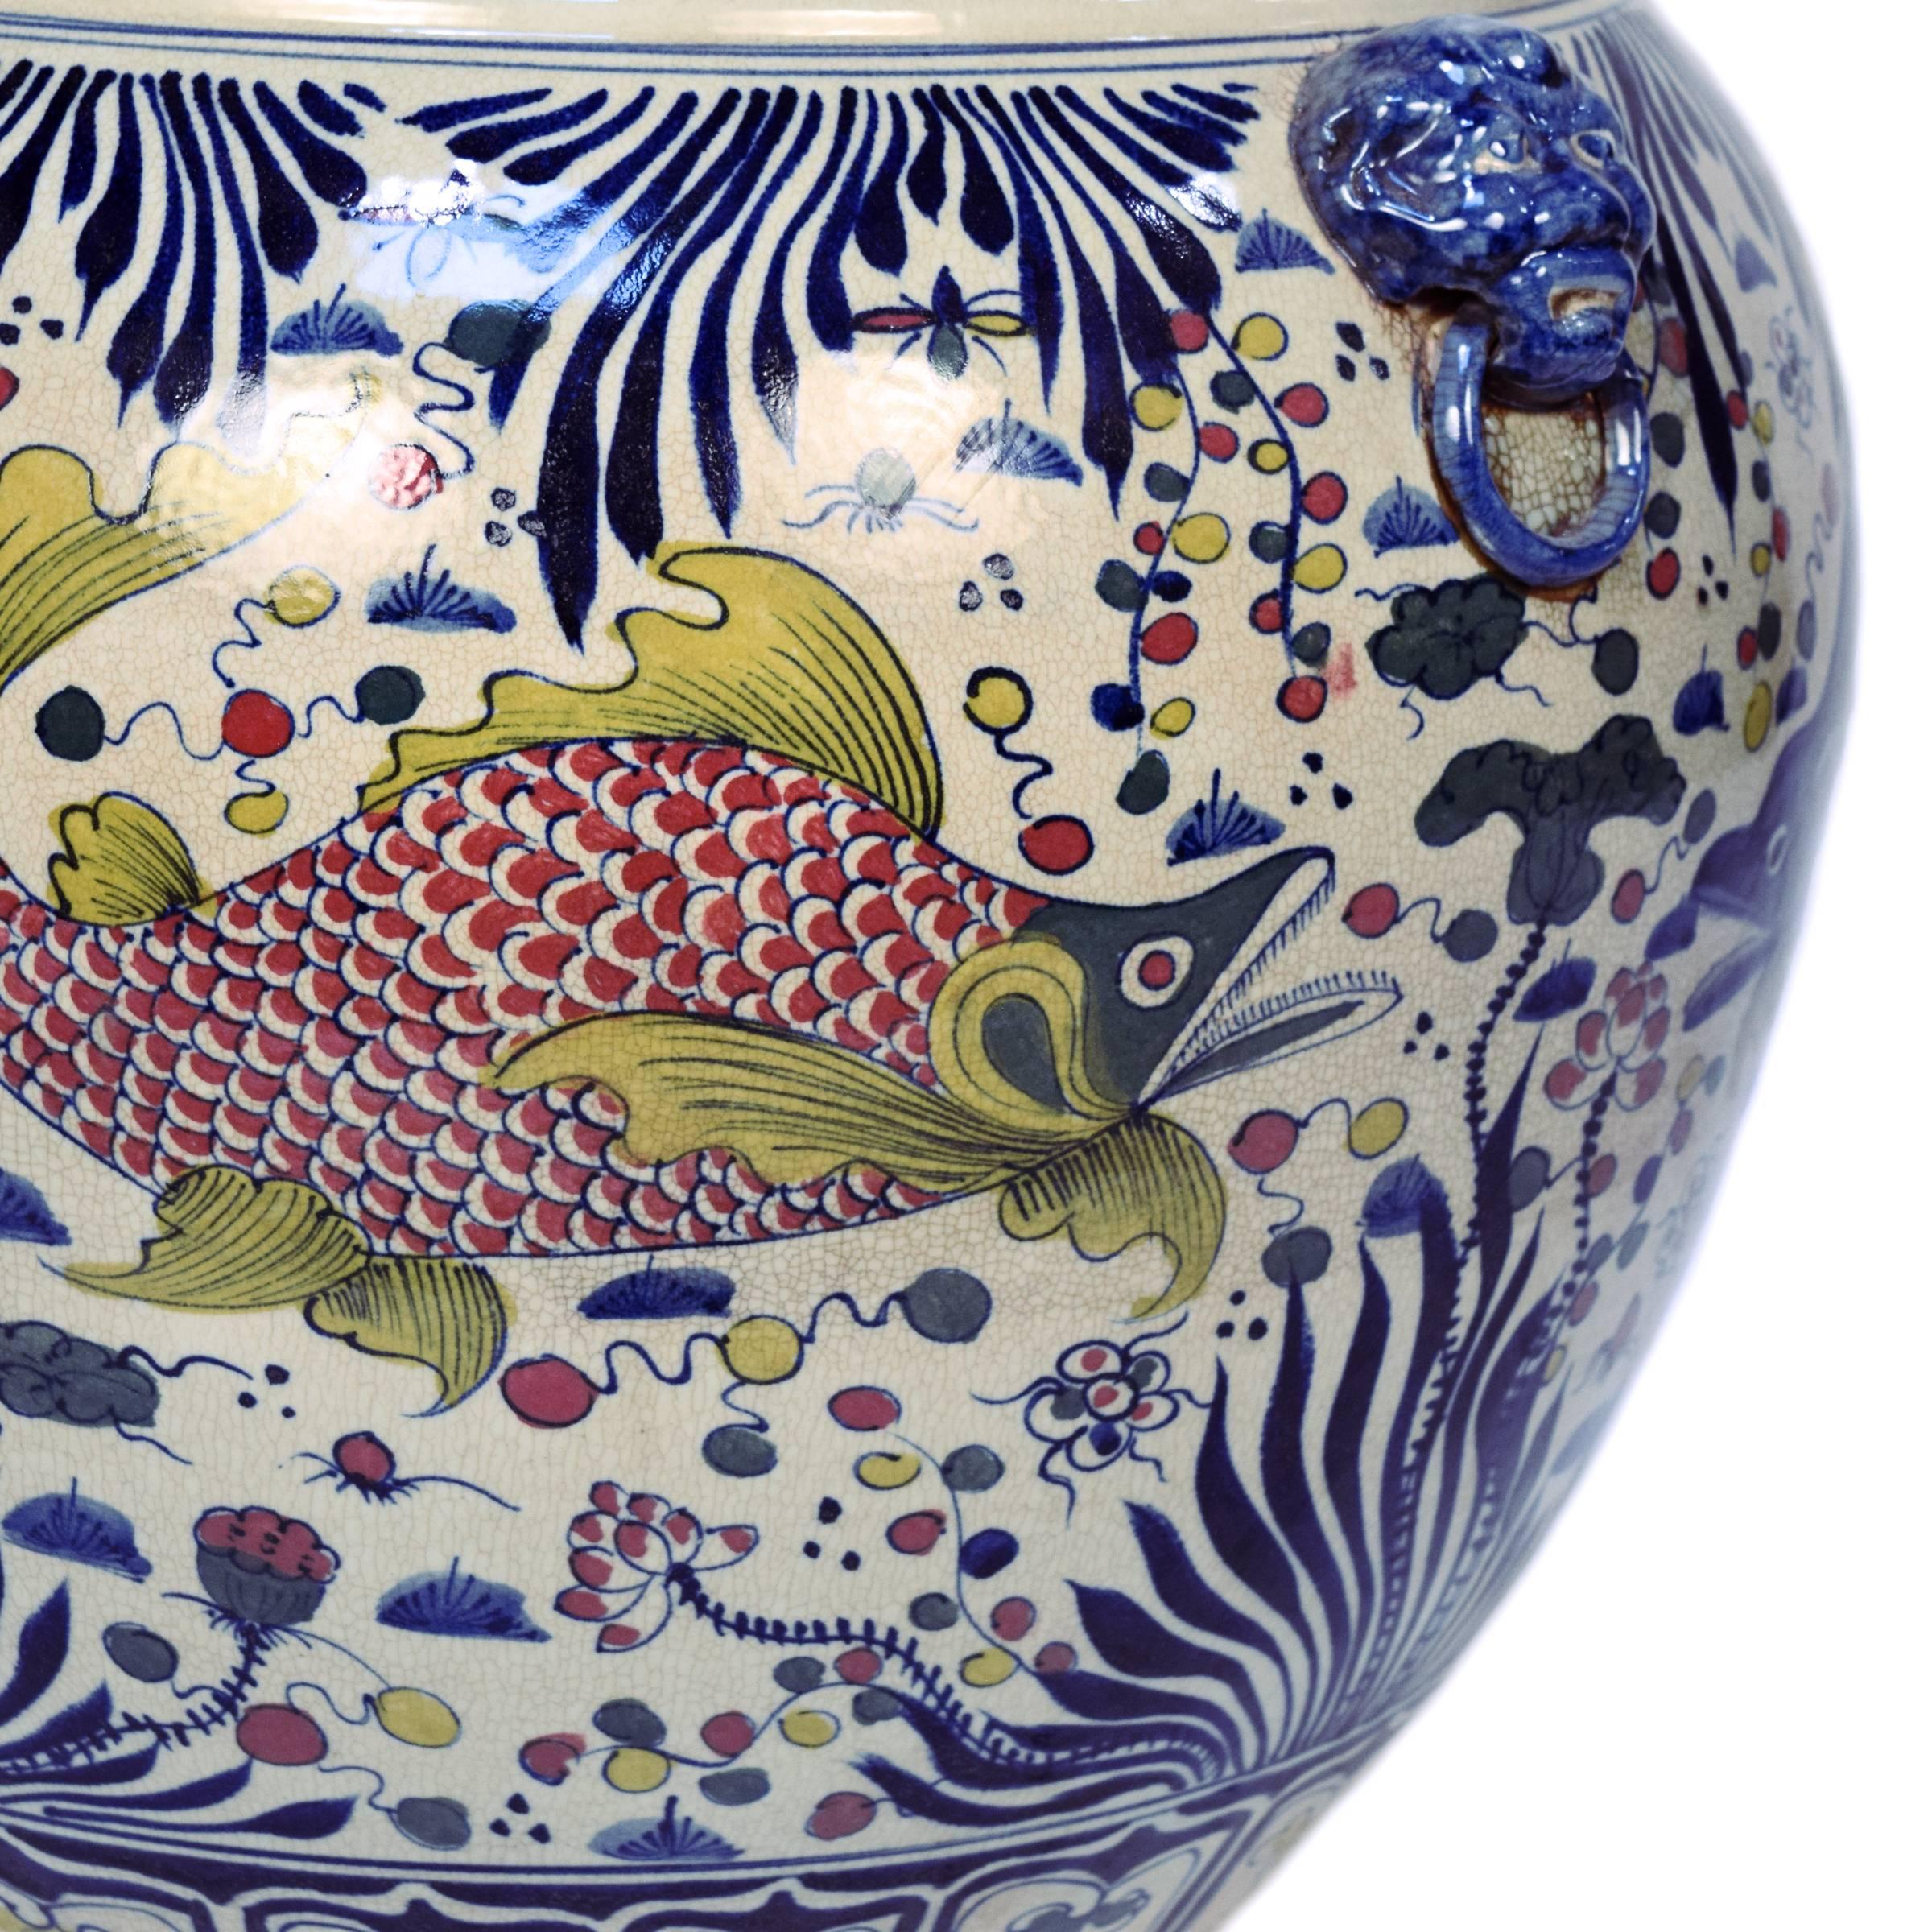 Glazed Chinese Wucai Fish Bowl